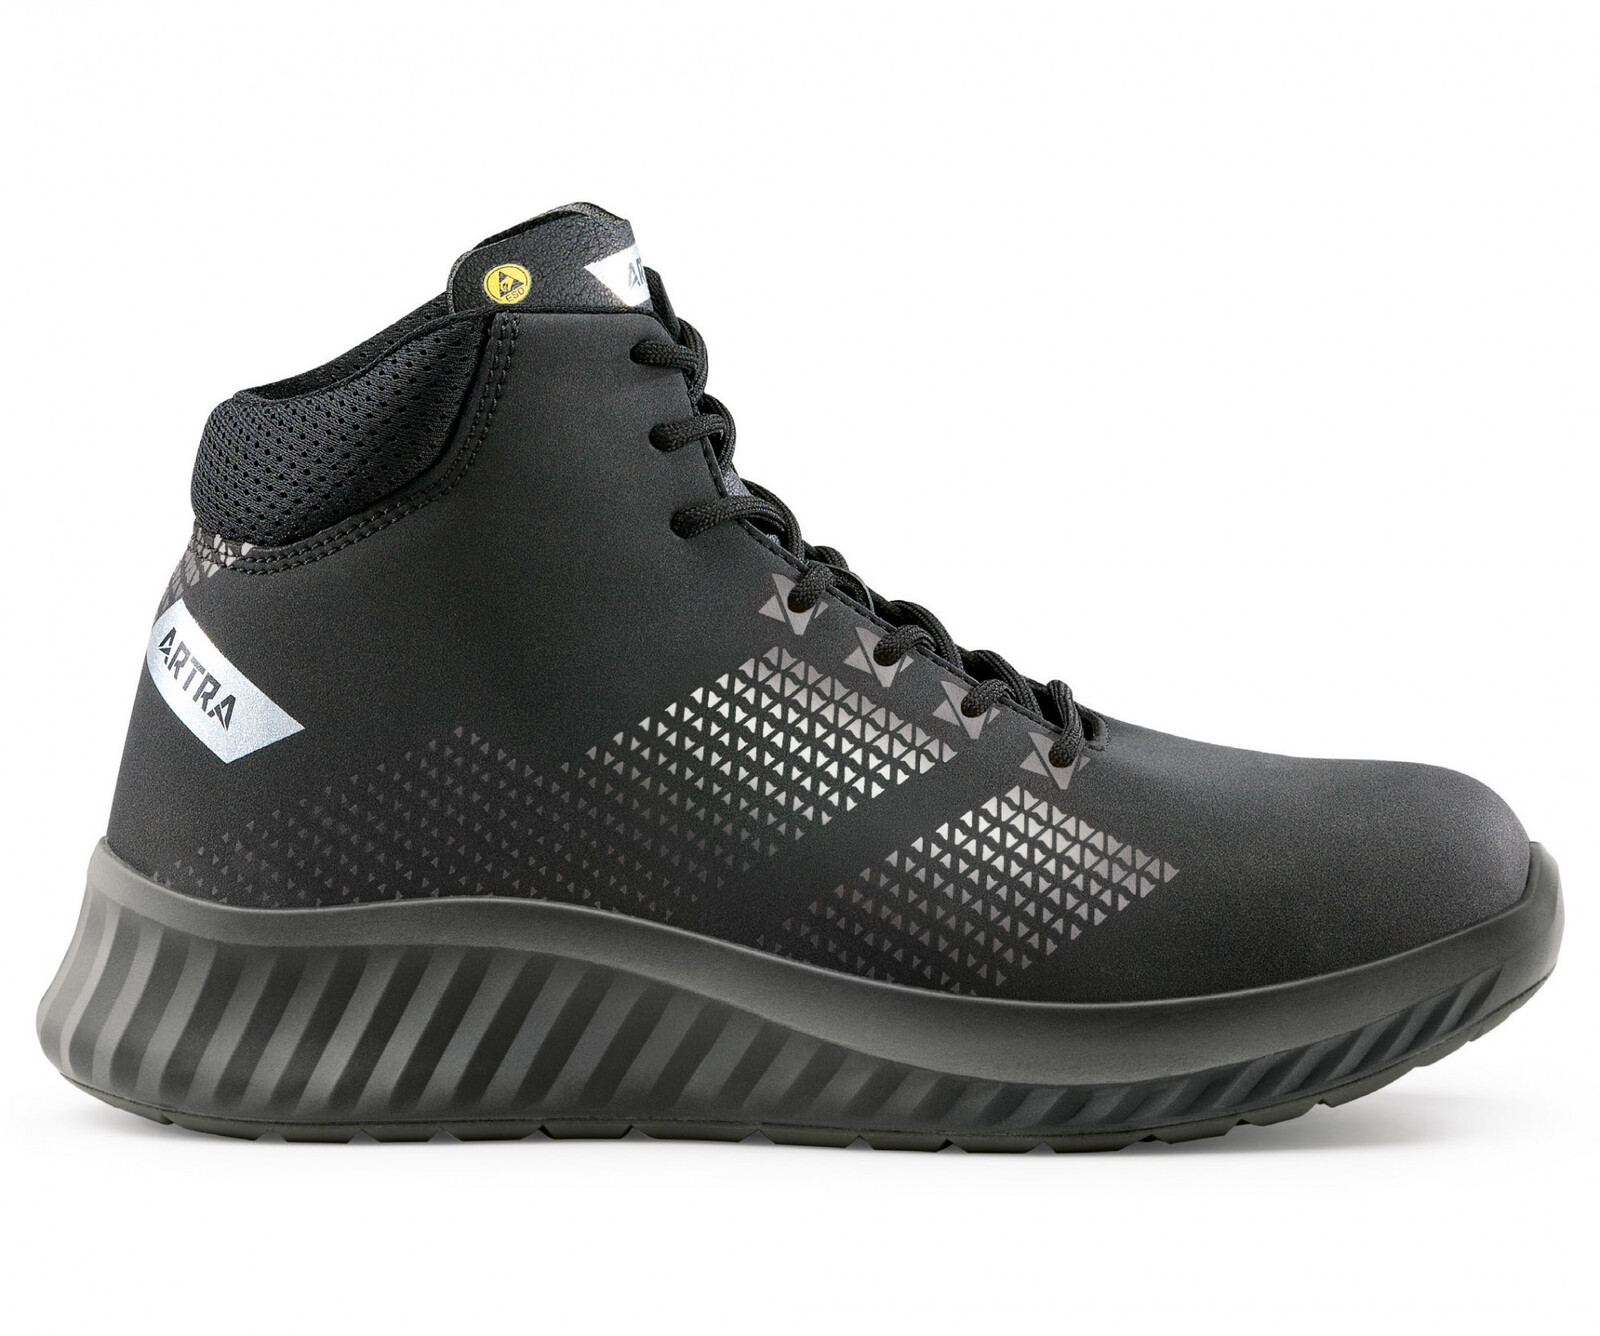 Bezpečnostná členková obuv Artra Aroserio 750 616560 S3 SRC ESD - veľkosť: 40, farba: čierna/sivá